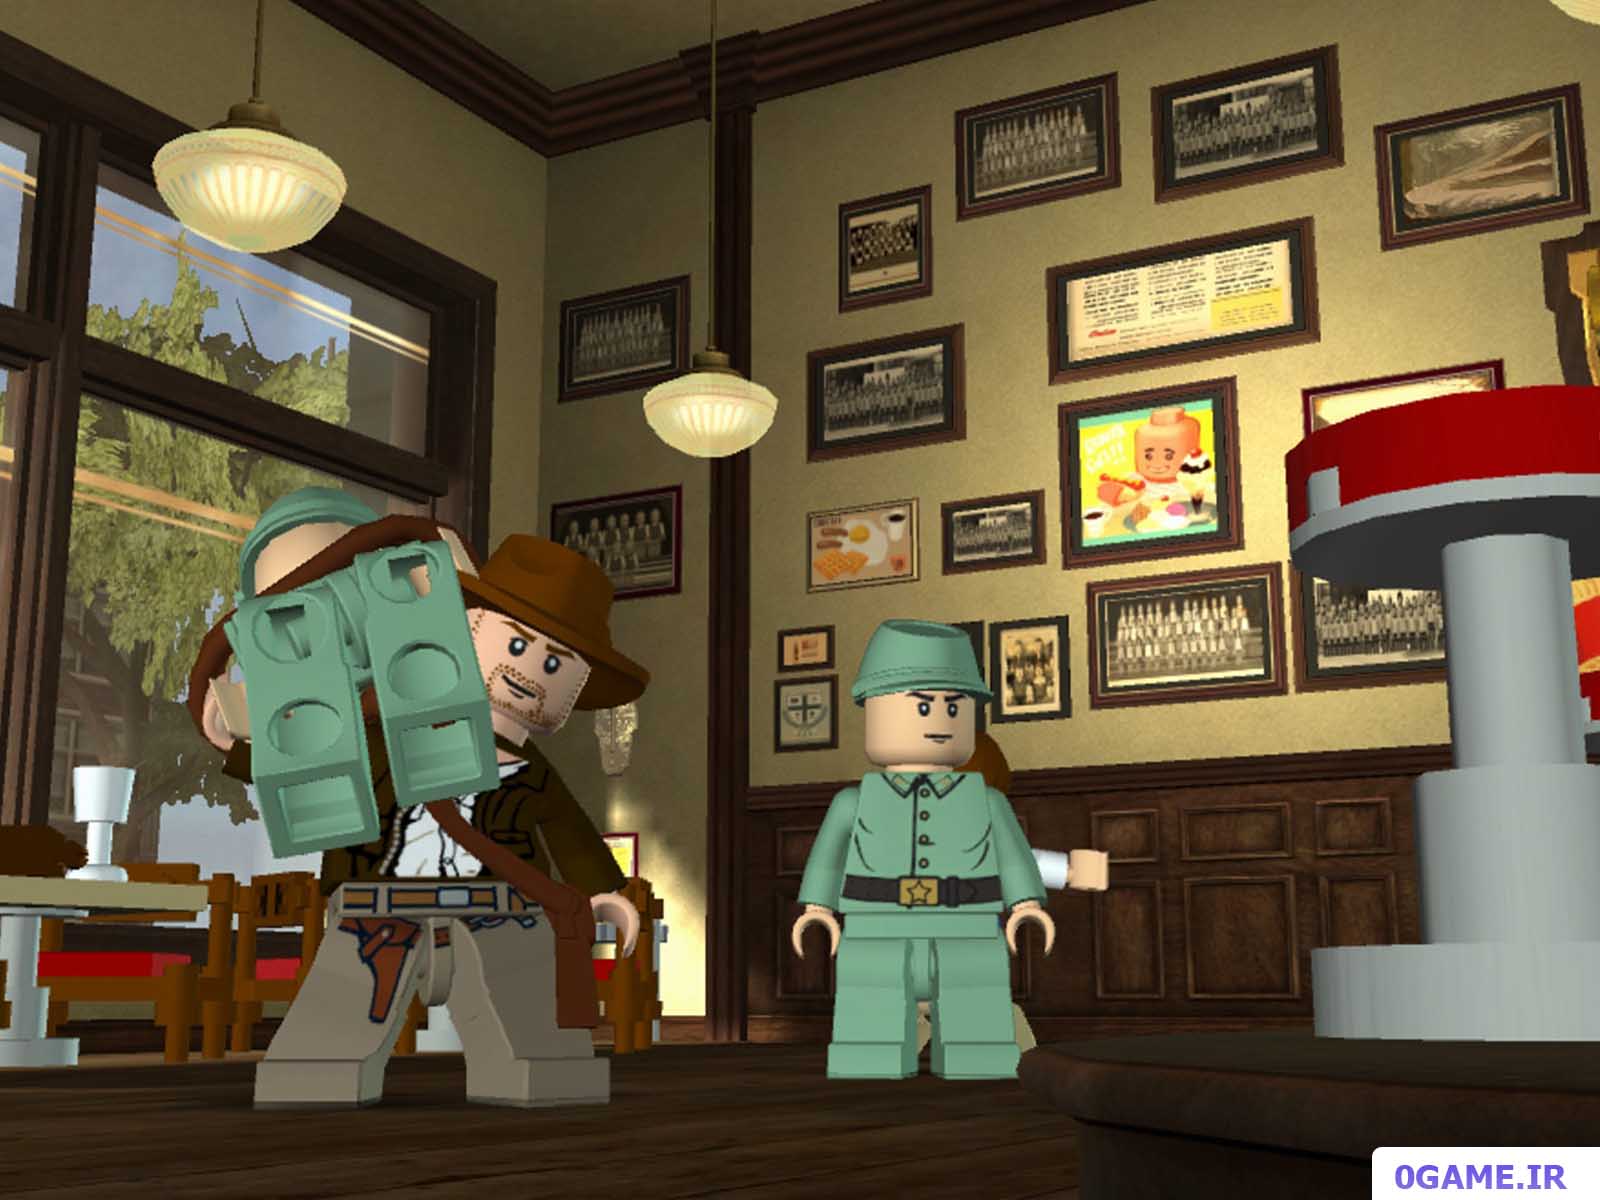 دانلود بازی لگو ایندیانا جونز 2 (LEGO Indiana Jones) نسخه کامل برای کامپیوتر